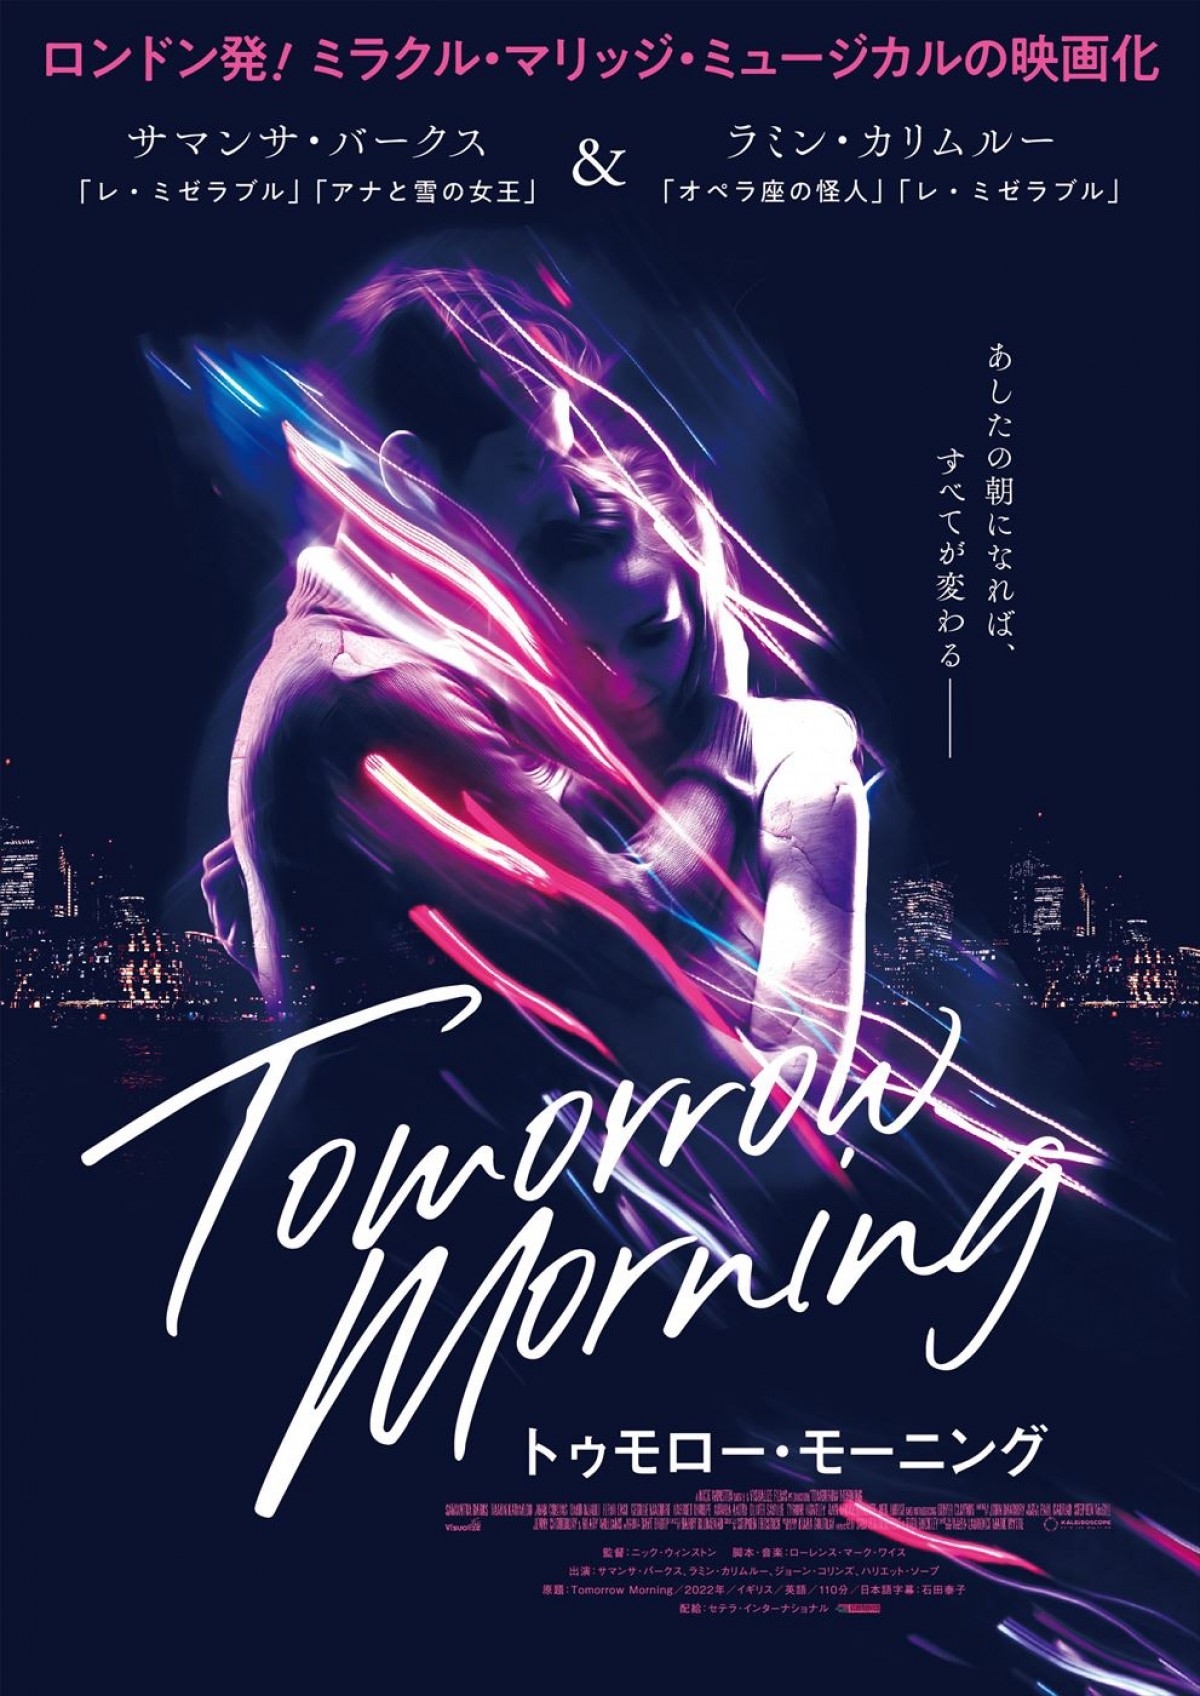  世界最高峰のミュージカル・スターが競演、『トゥモロー・モーニング』を映画化　12月に日本公開